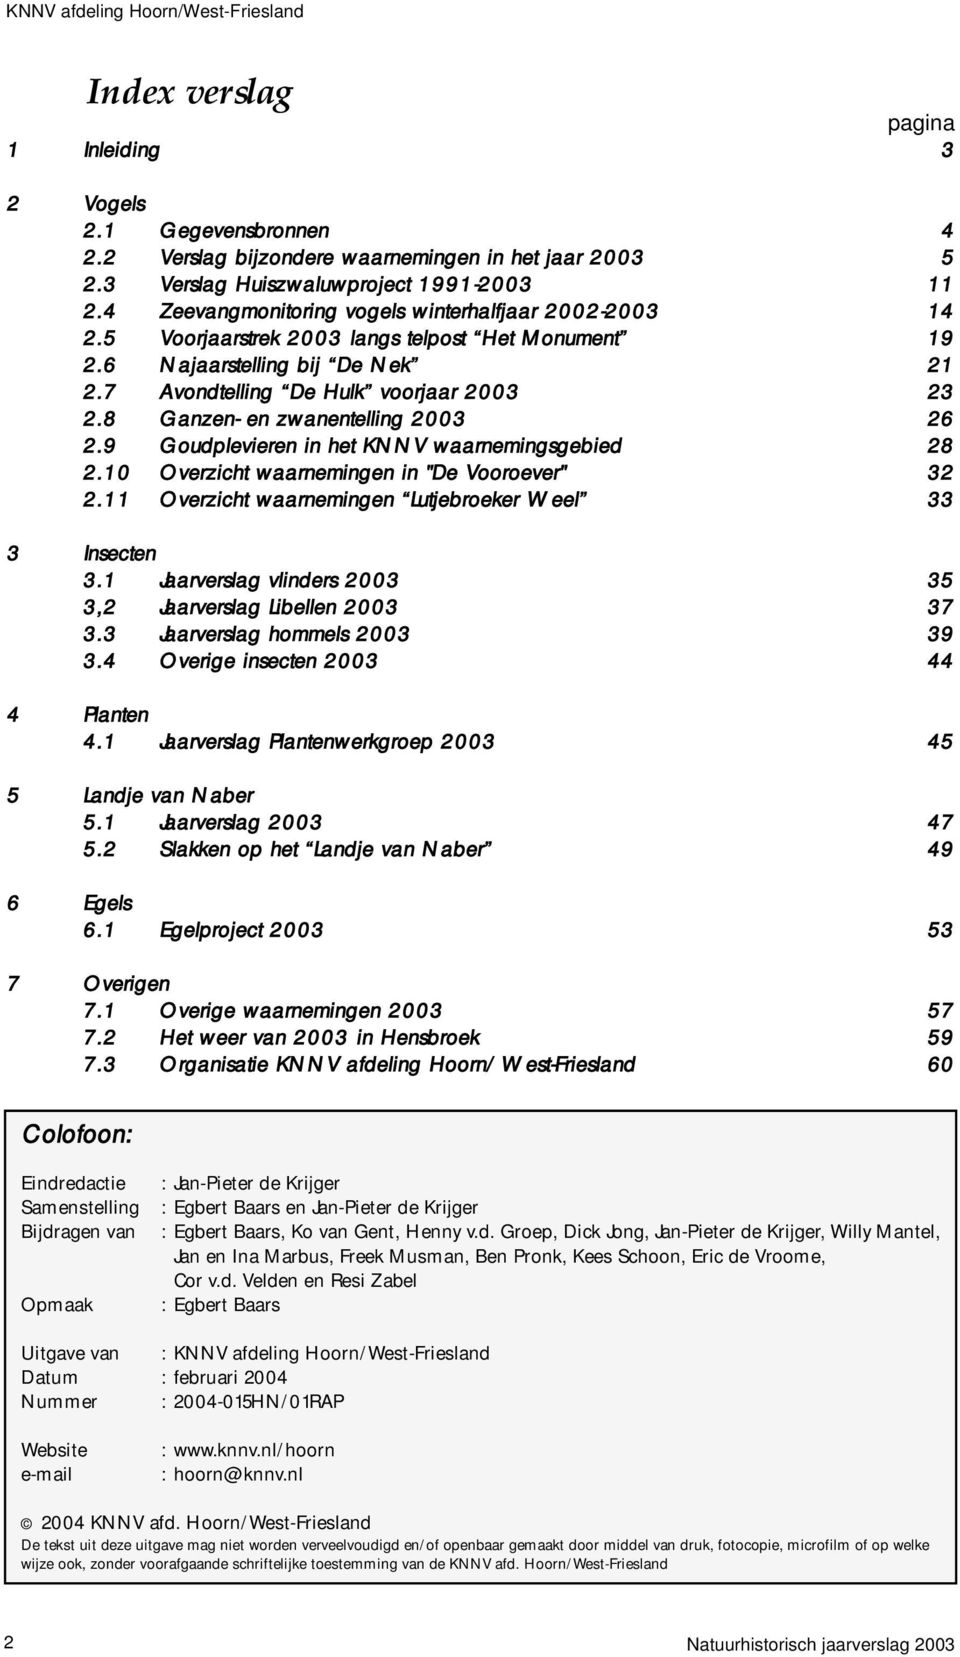 8 Ganzen- en zwanentelling 2003 26 2.9 Goudplevieren in het KNNV waarnemingsgebied 28 2.10 Overzicht waarnemingen in "De Vooroever" 32 2.11 Overzicht waarnemingen Lutjebroeker Weel 33 3 Insecten 3.